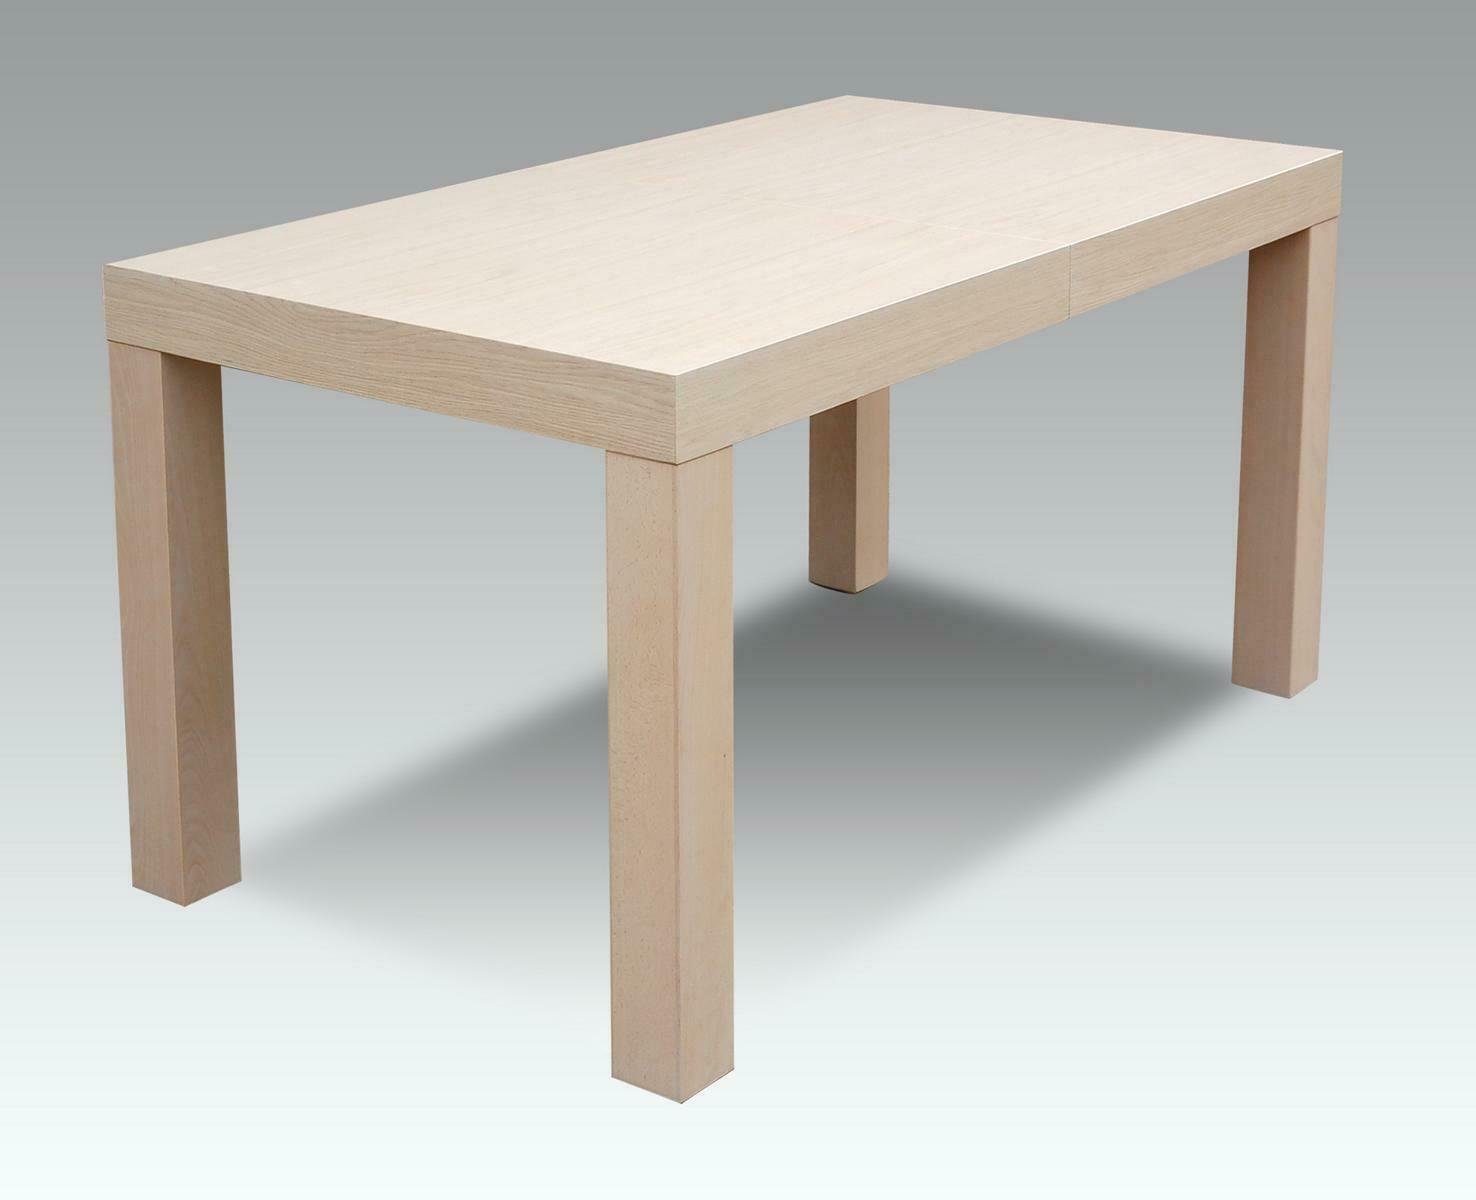 Meeting Büro Esstisch, Design Tische Esstische JVmoebel Tisch Esstisch Modern